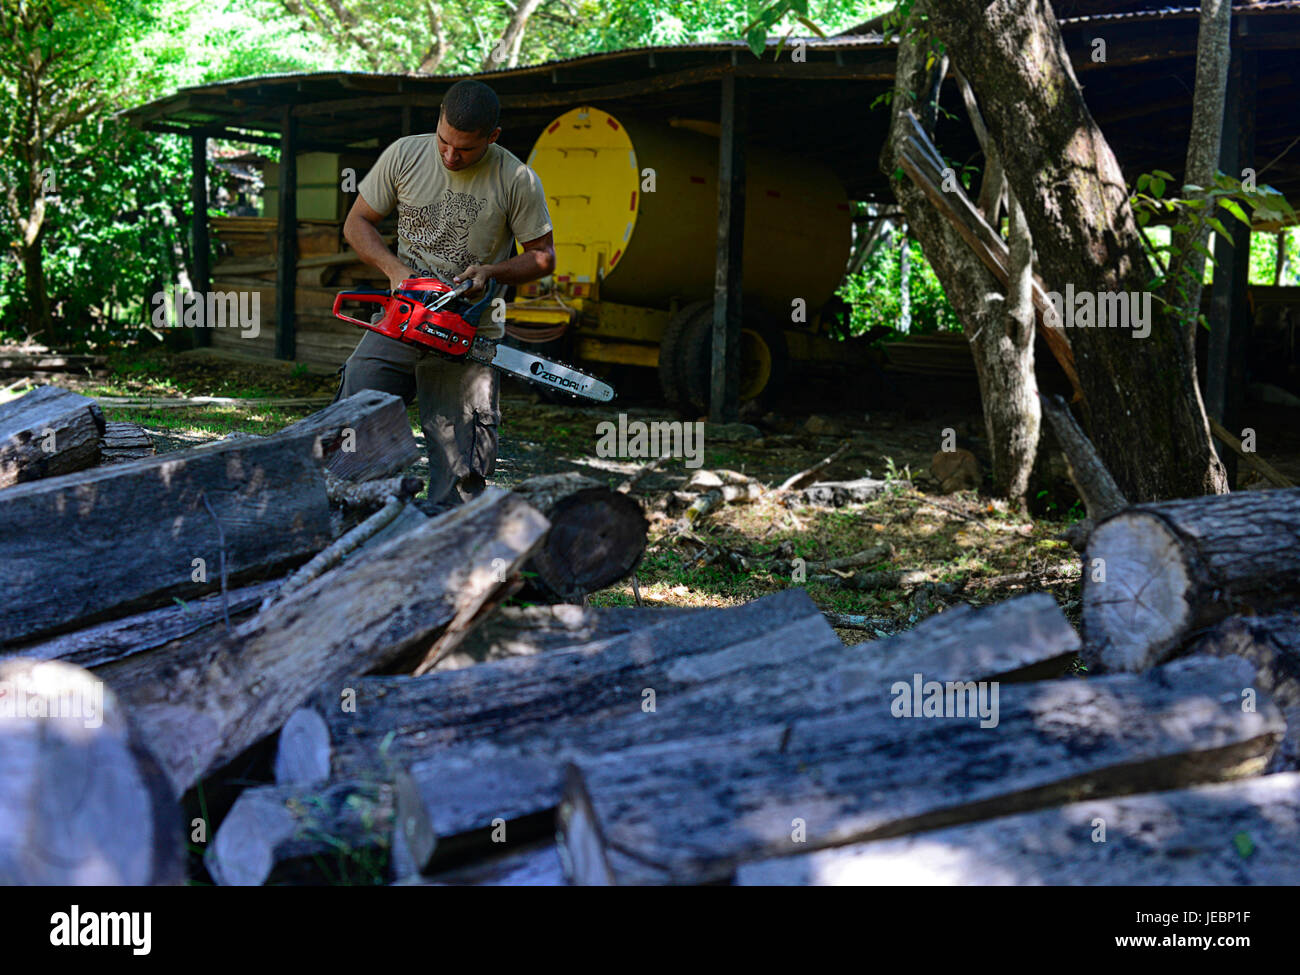 Santa Rosa Park Ranger Josue Sandoval Drehzahl einer Kettensäge über einen Stapel von illegalen Bauholz von den nationalen System von Schutzgebieten beschlagnahmt. Stockfoto